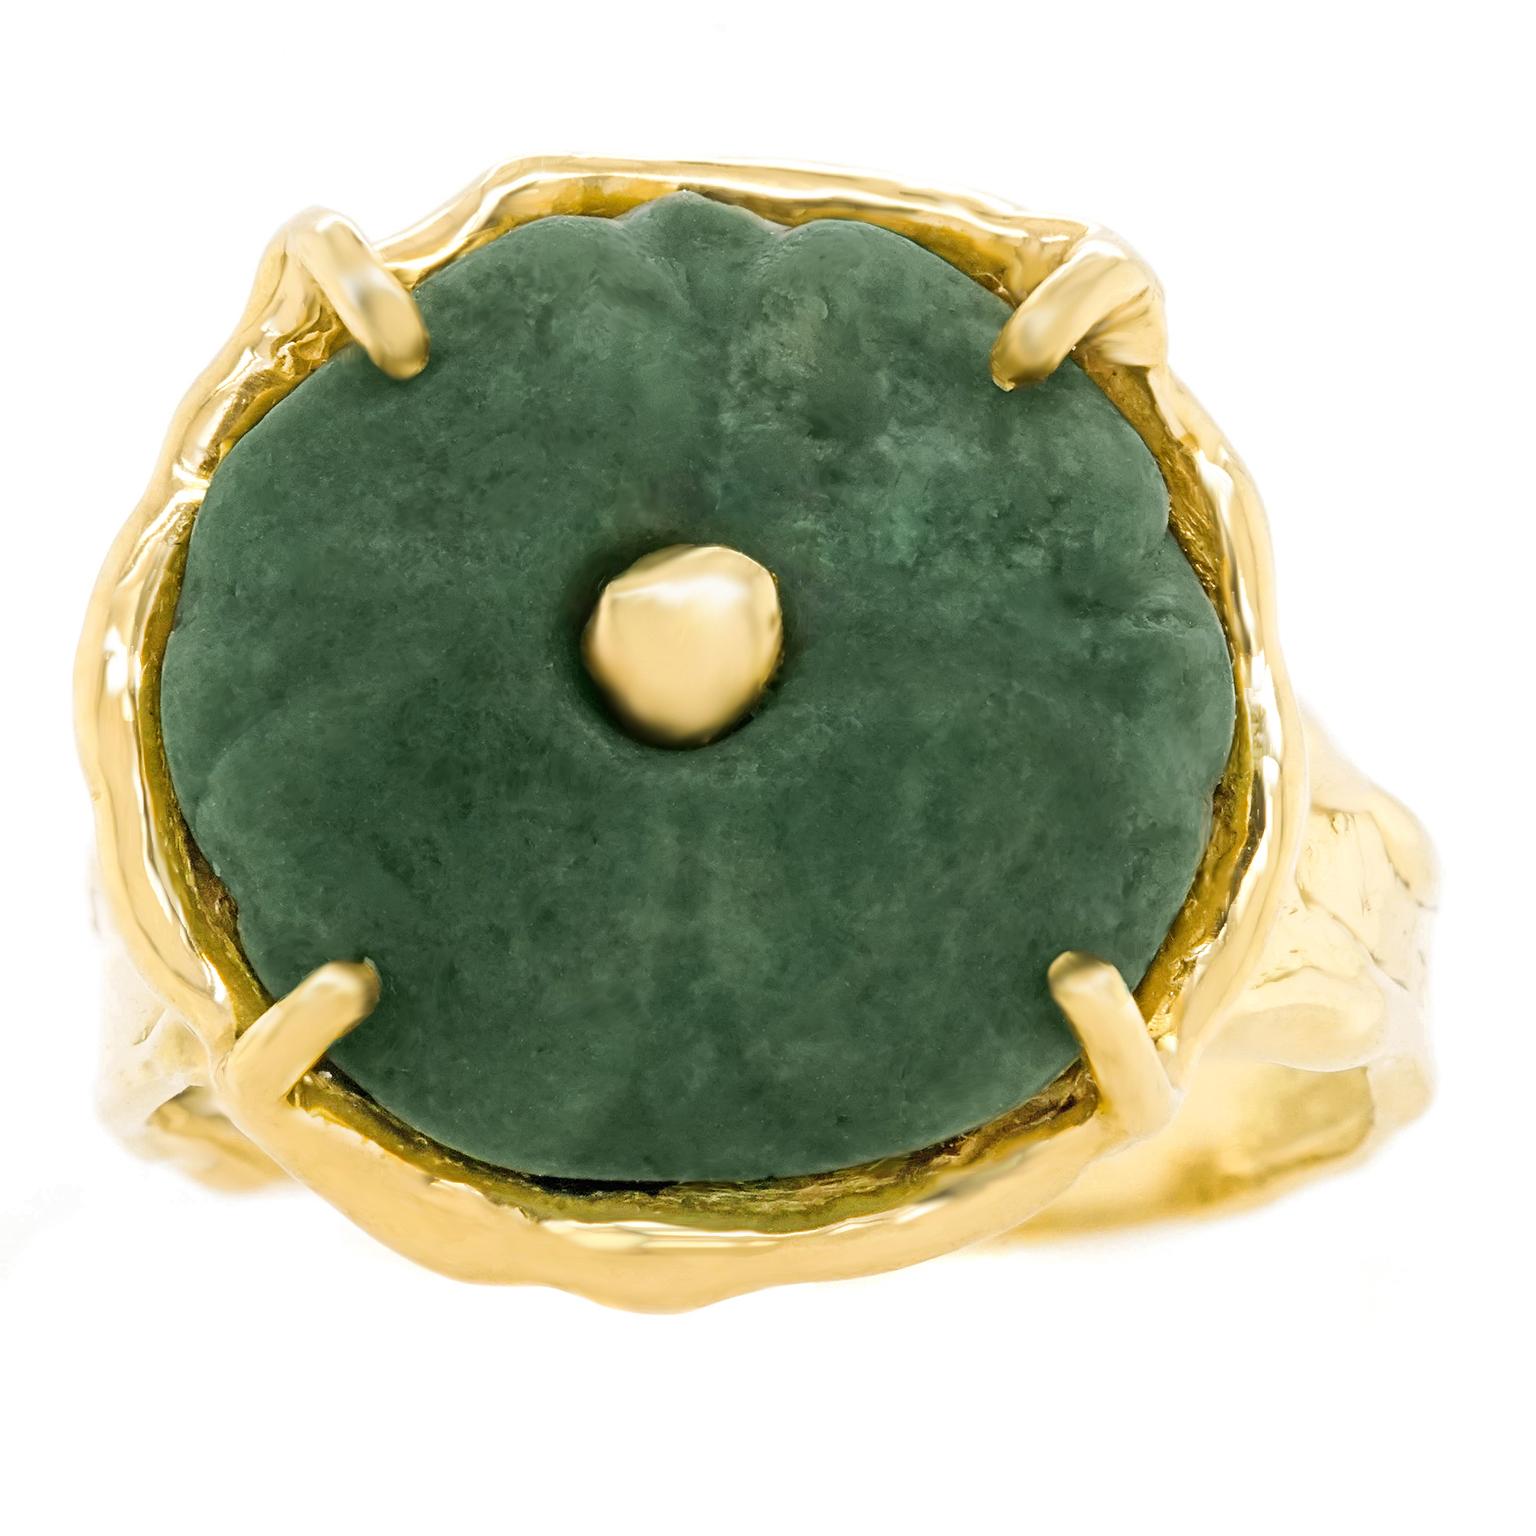 carved jade rings